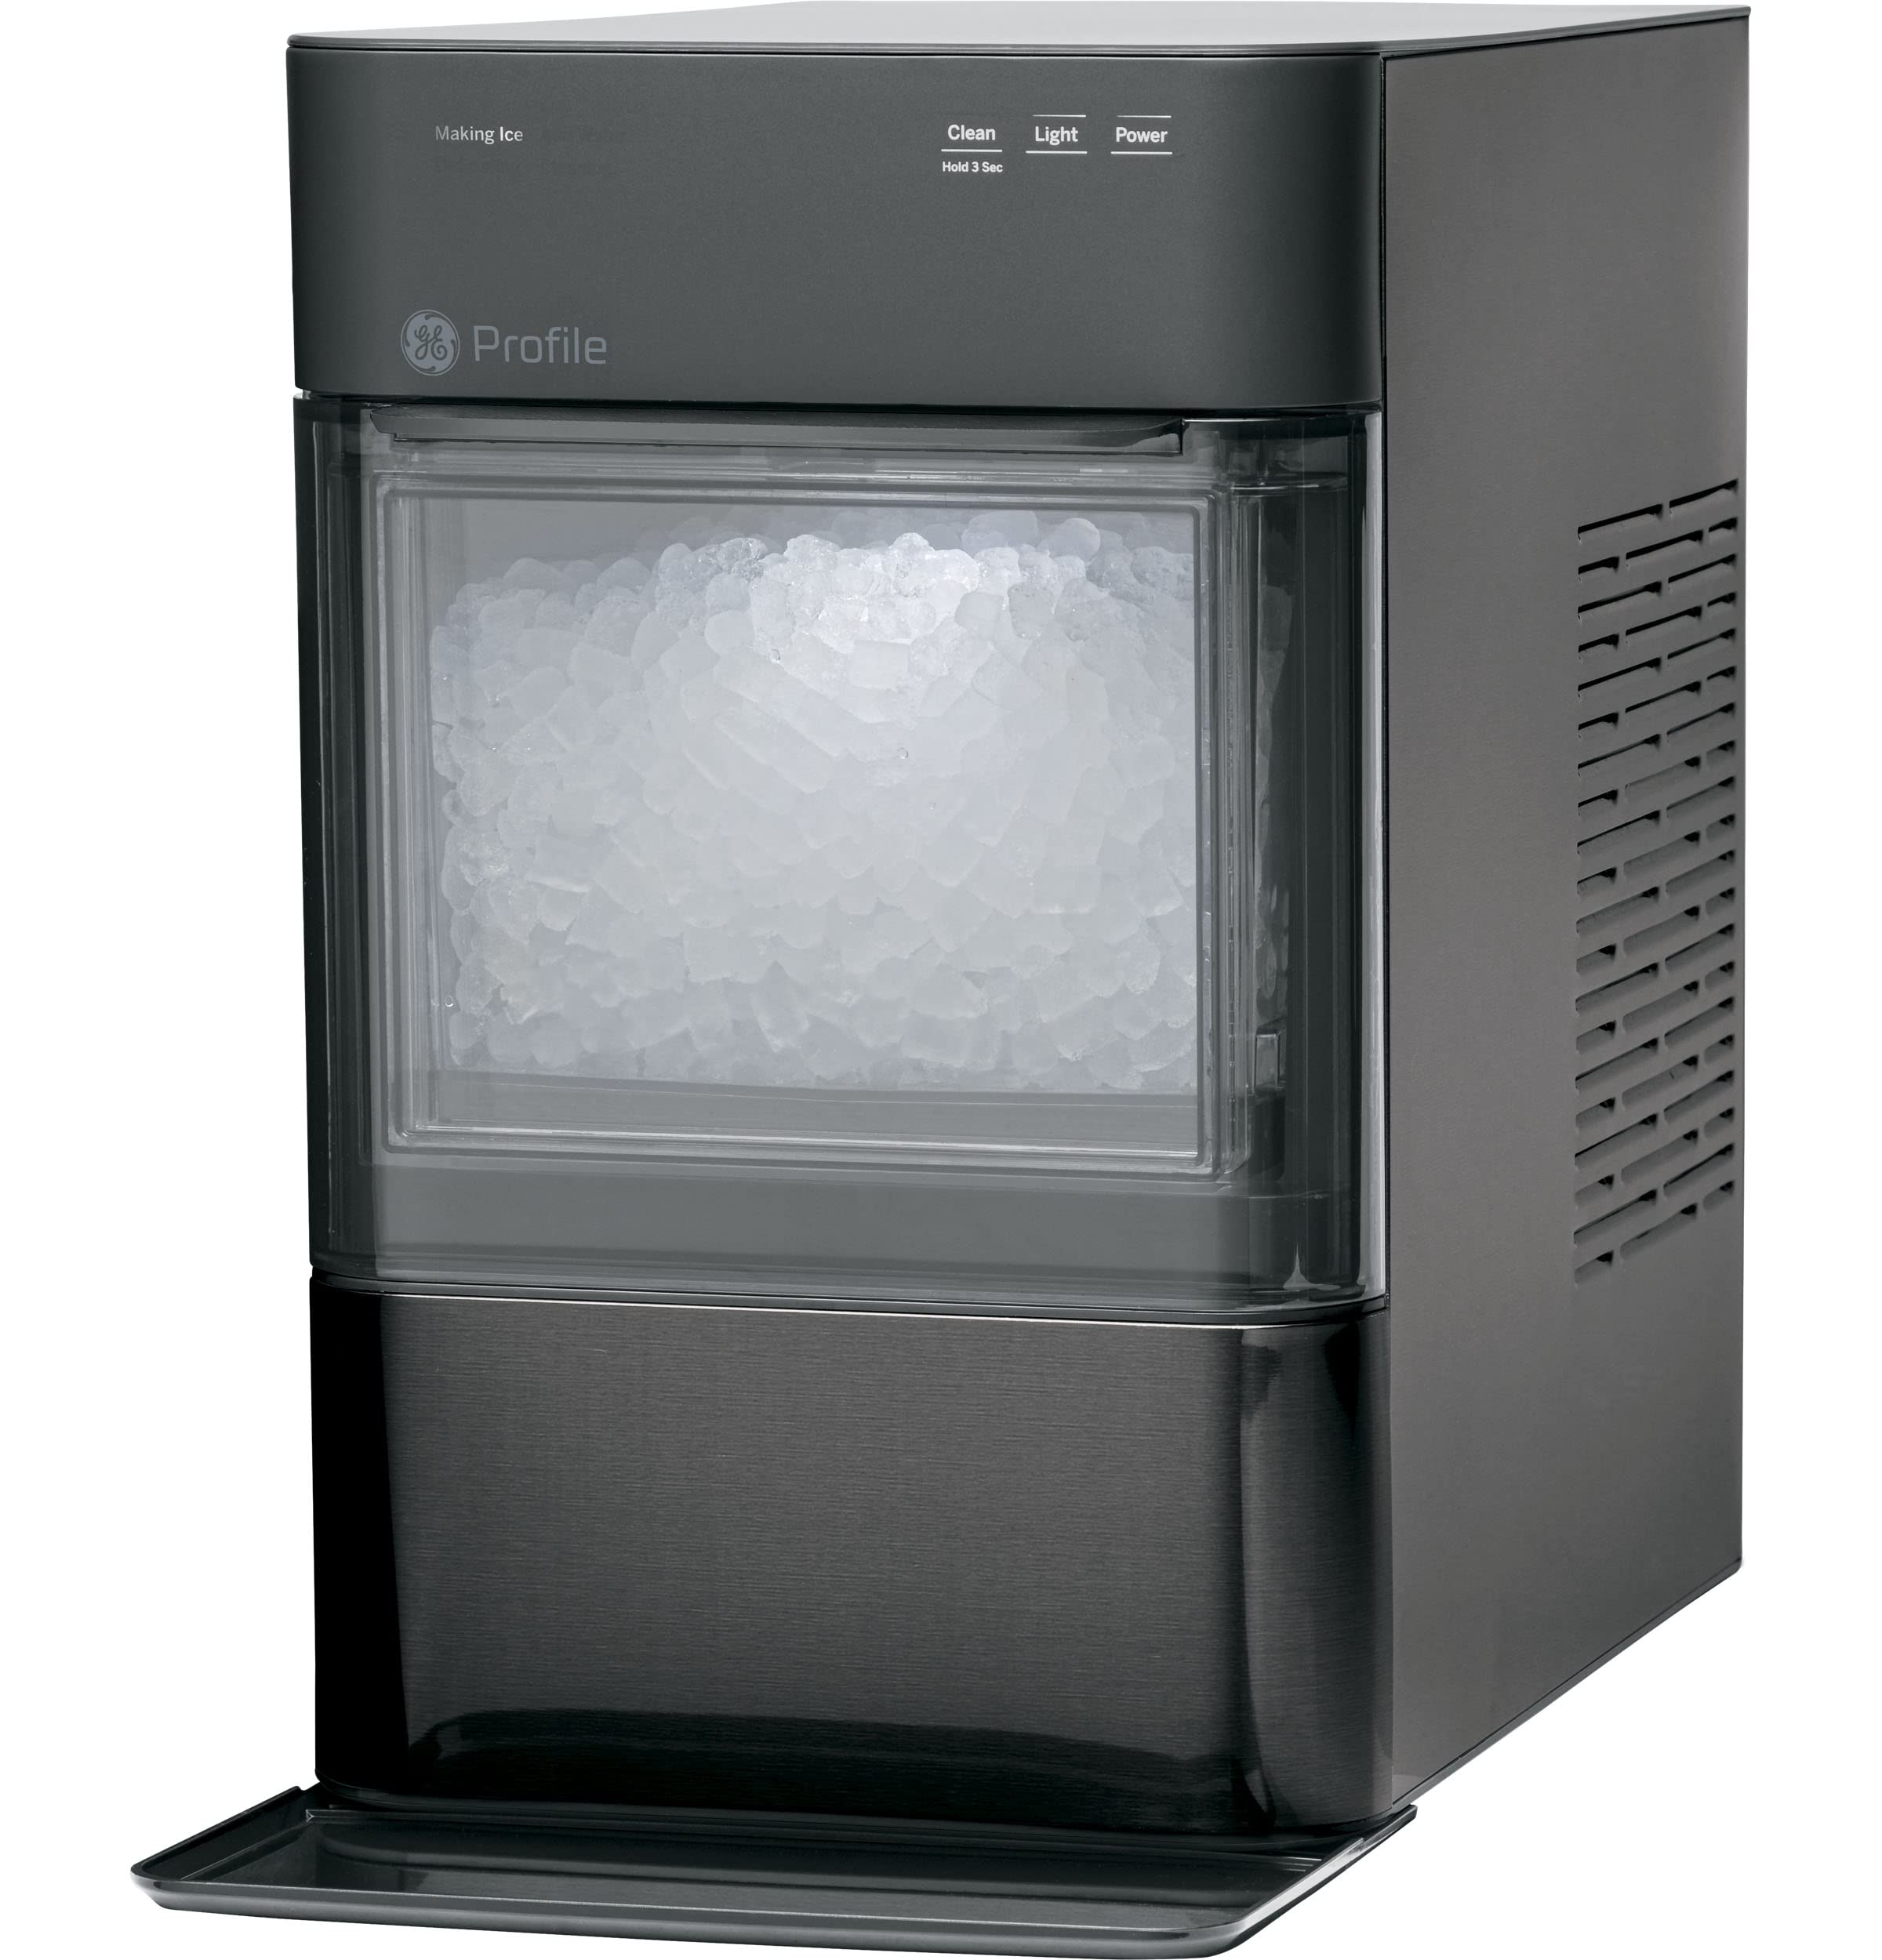 GE Perfil Opal 2.0 | Máquina para hacer hielo Nugt de encimera | Máquina de hielo con conectividad WiFi | Esenciales de cocina para el hogar intelinte | Negro inoxidable